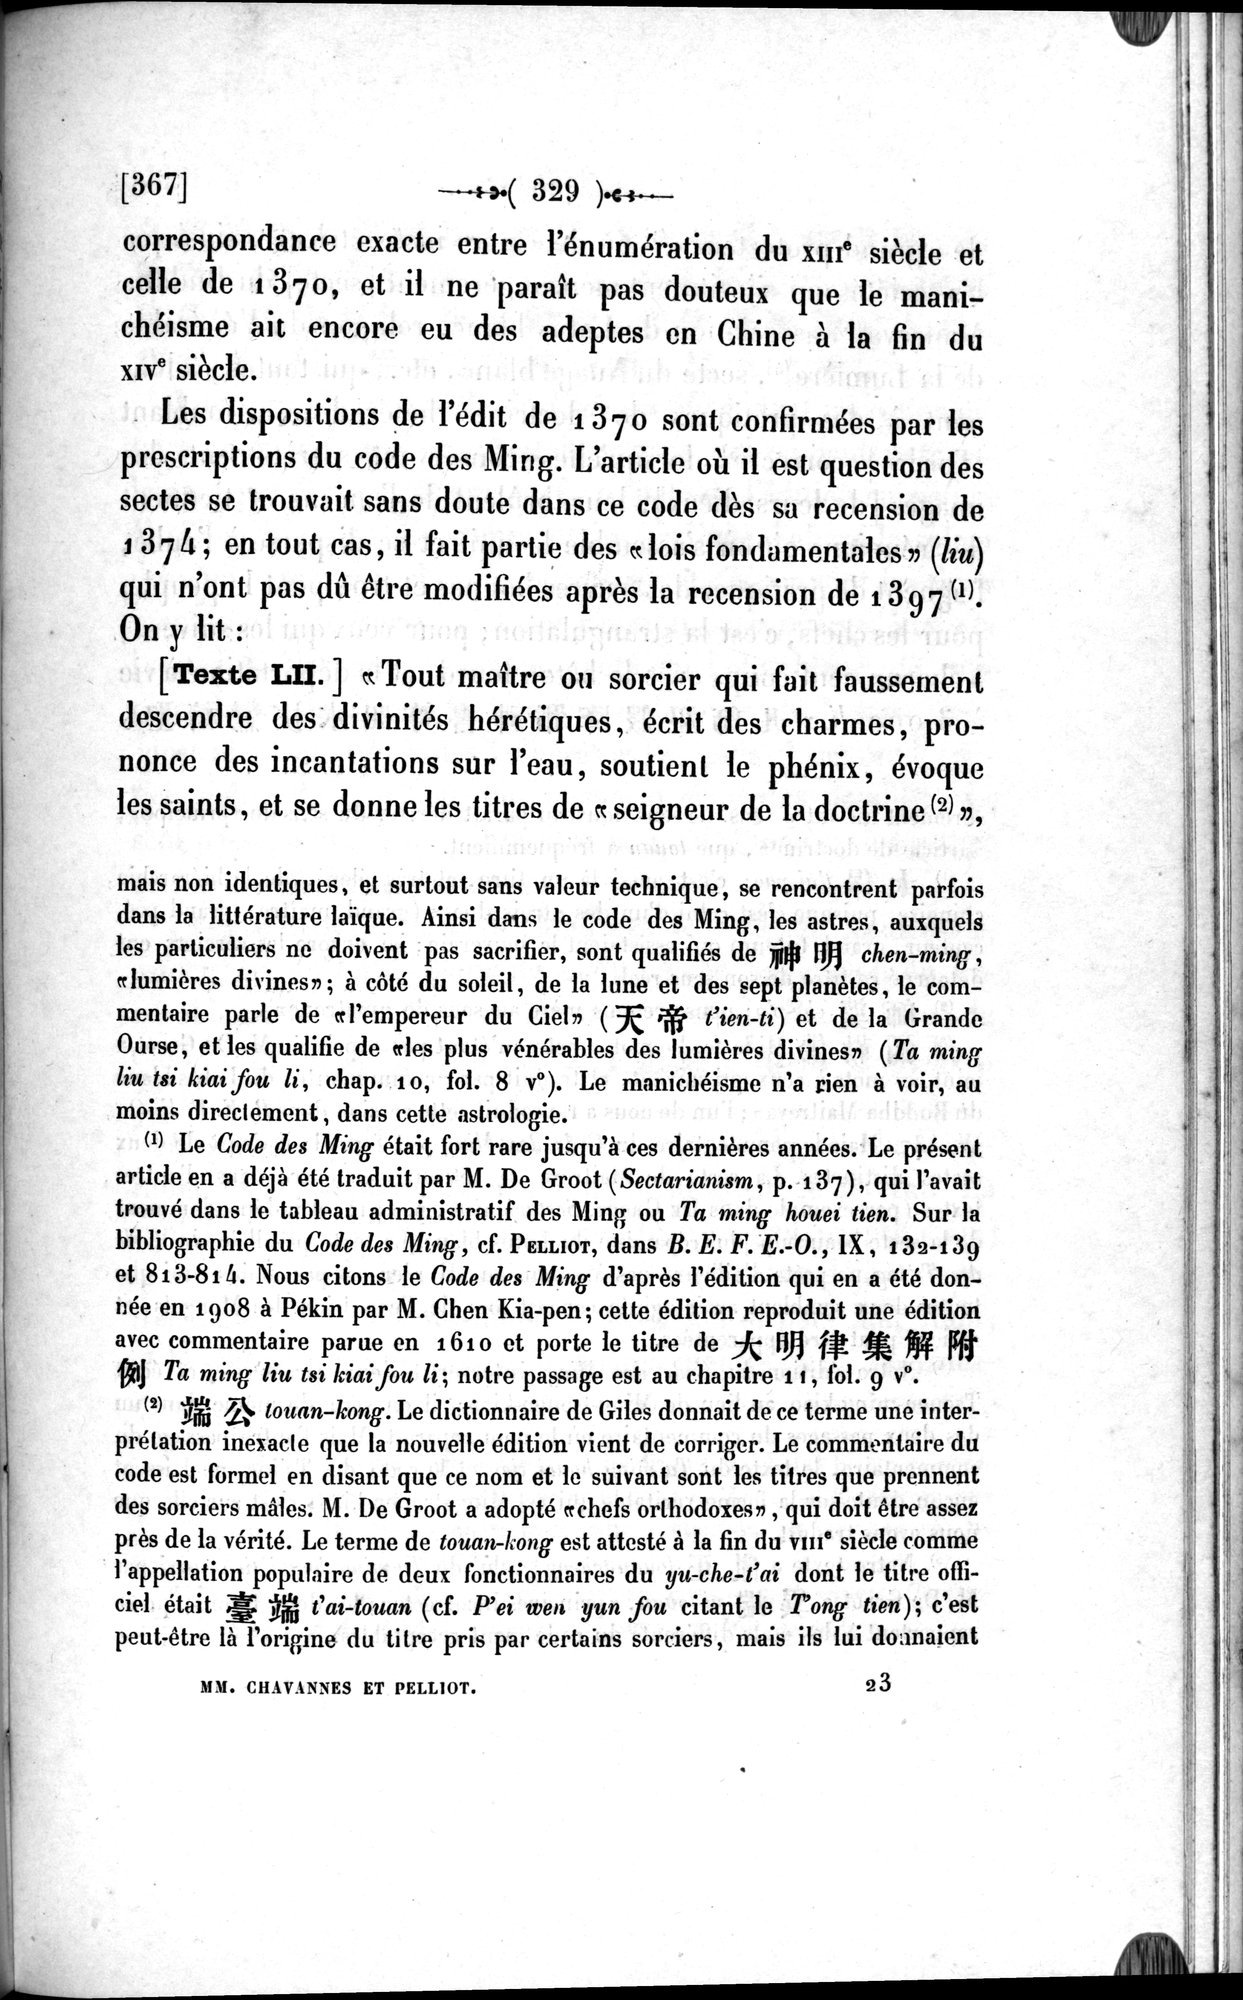 Un traité manichéen retrouvé en Chine : vol.1 / Page 339 (Grayscale High Resolution Image)